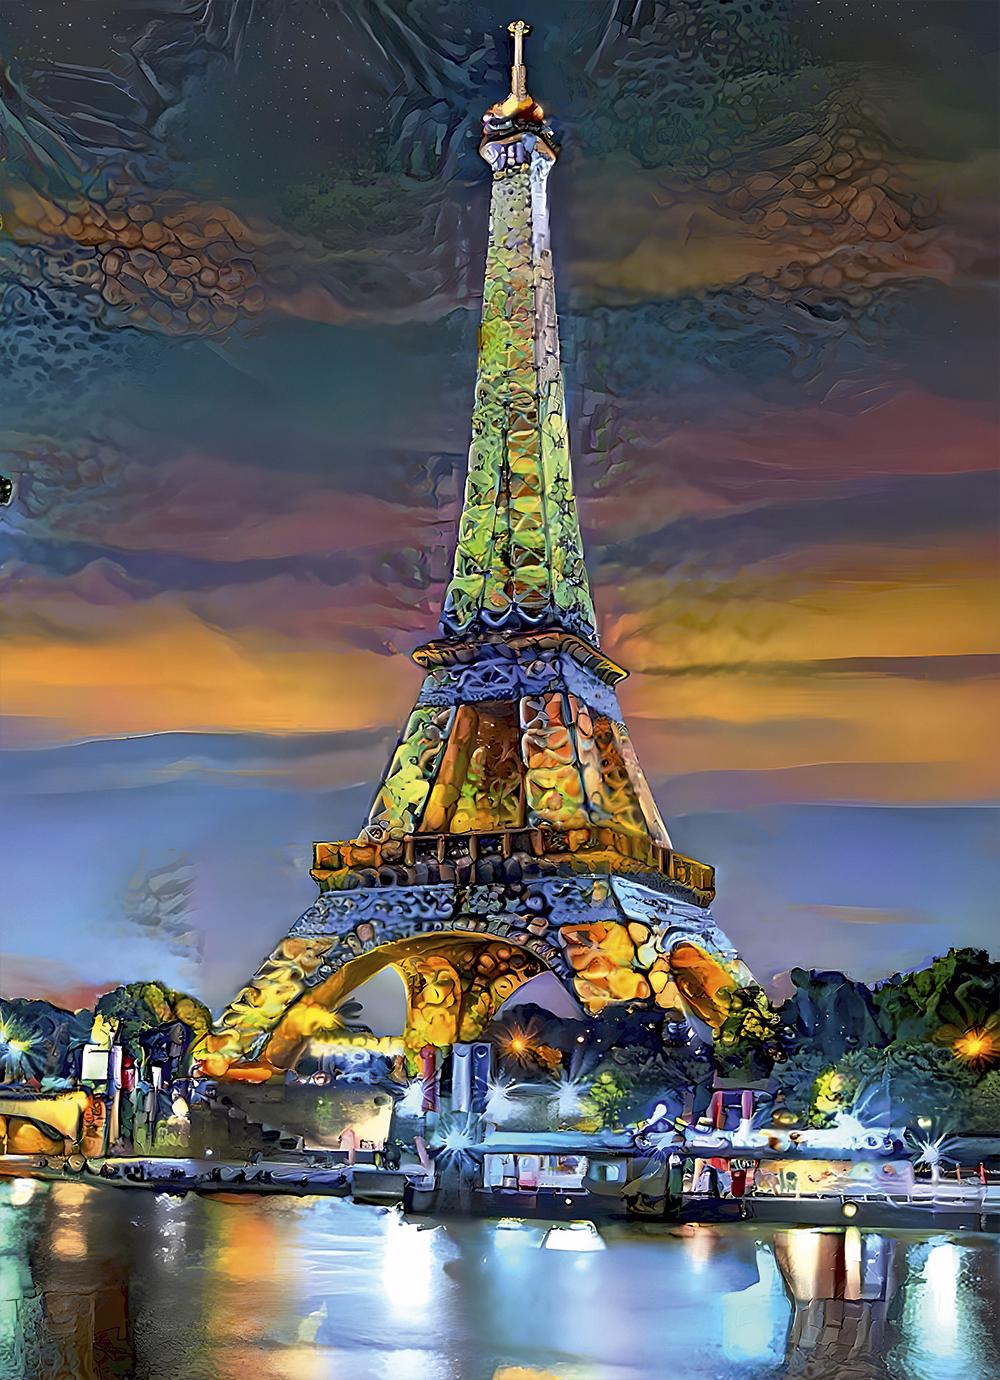 Puzzle Eiffeltårnet ved solnedgang, Paris, Frankrig